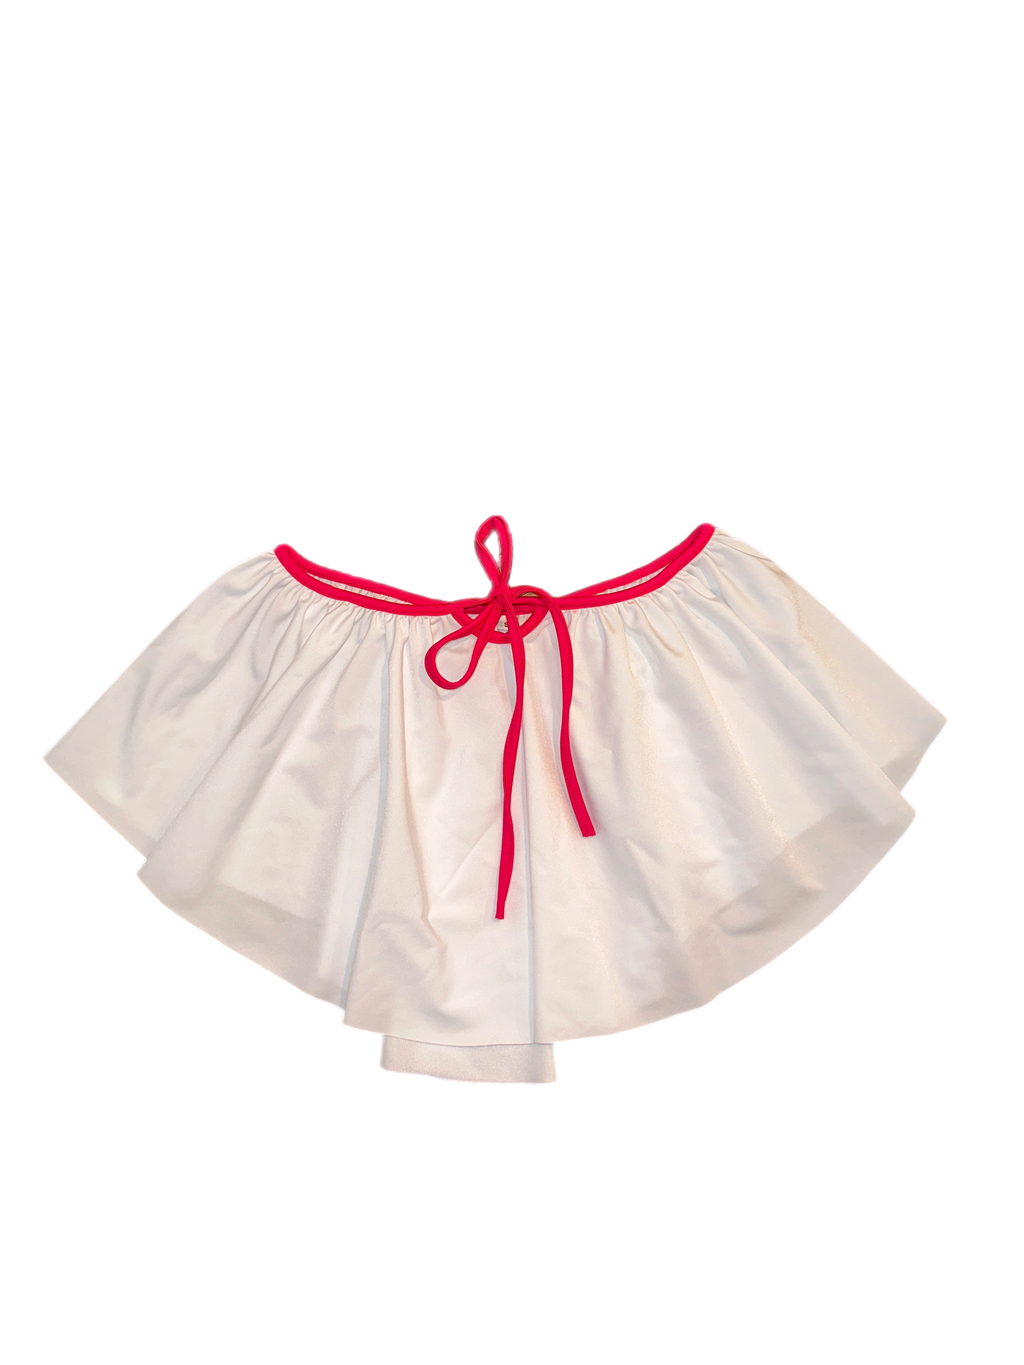 Candy Set Skirt